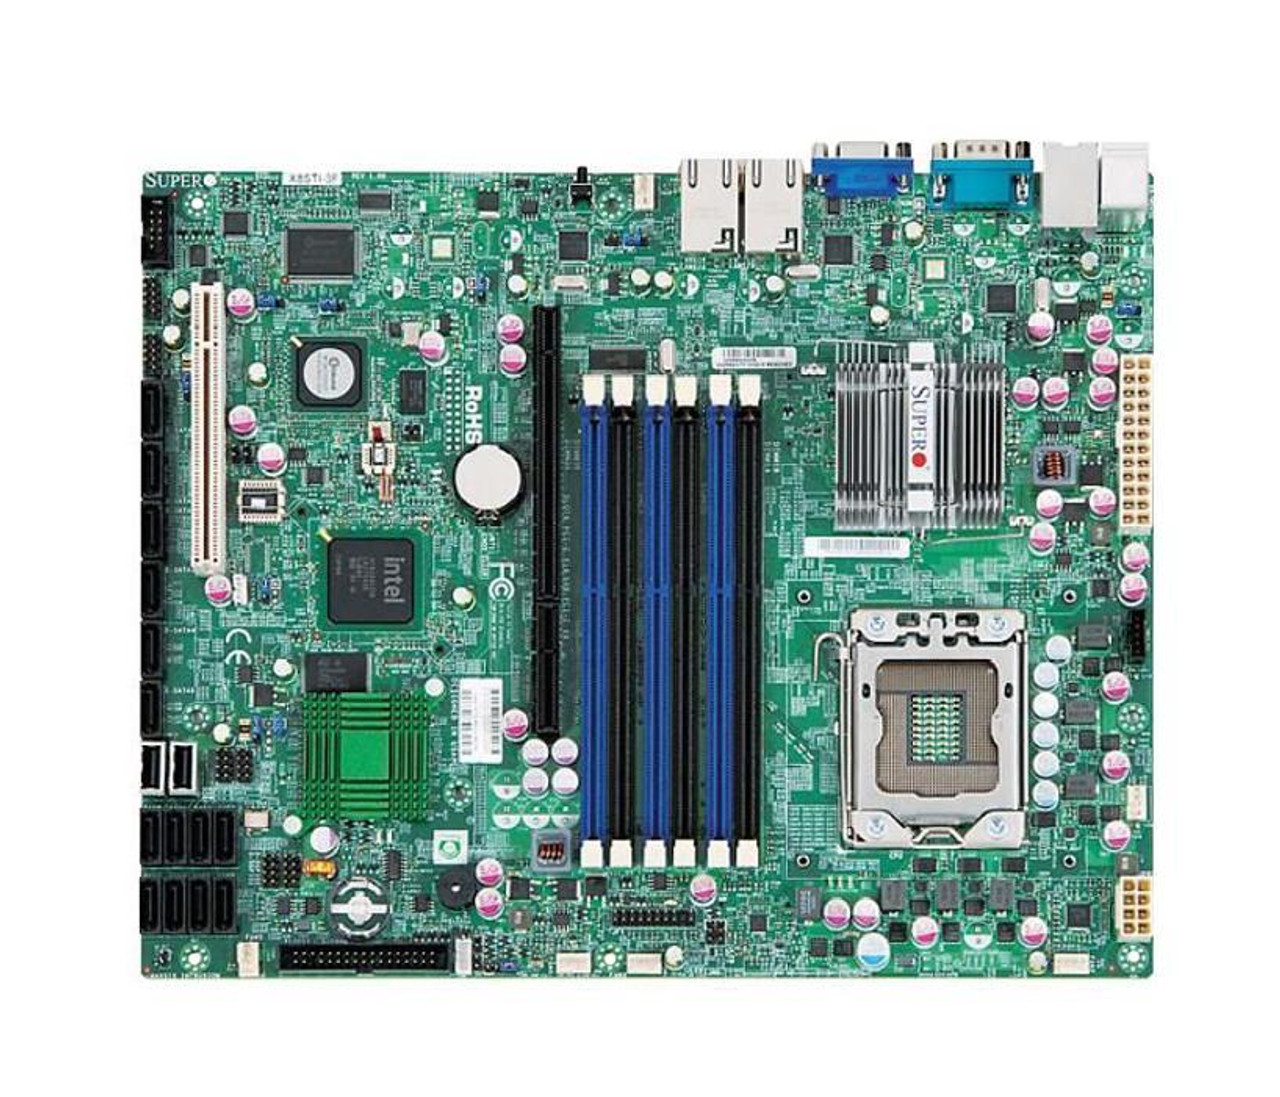 X8STI-F-B SuperMicro X8STI-F Socket LGA1366 Intel X58 Express Chipset ATX Server Motherboard (Refurbished)